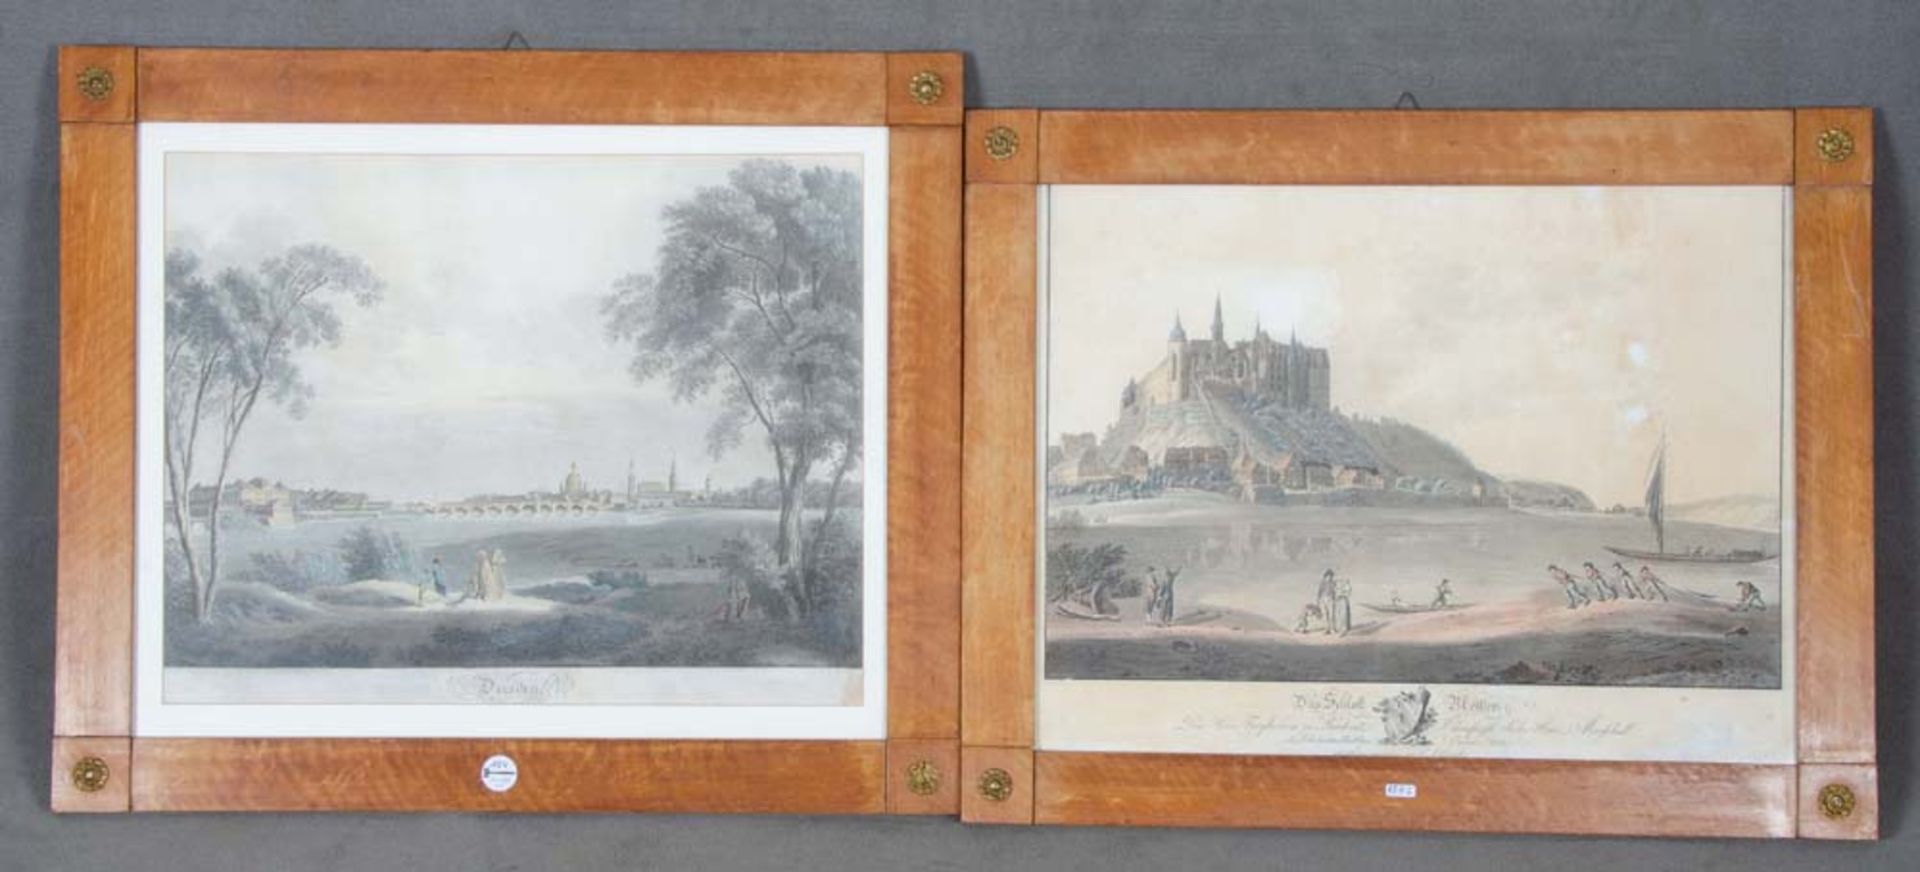 Graphiker des 19. Jhs. Ansicht von Dresden sowie von Schloss Albrechtsburg, Meissen. Aquatinta hi./